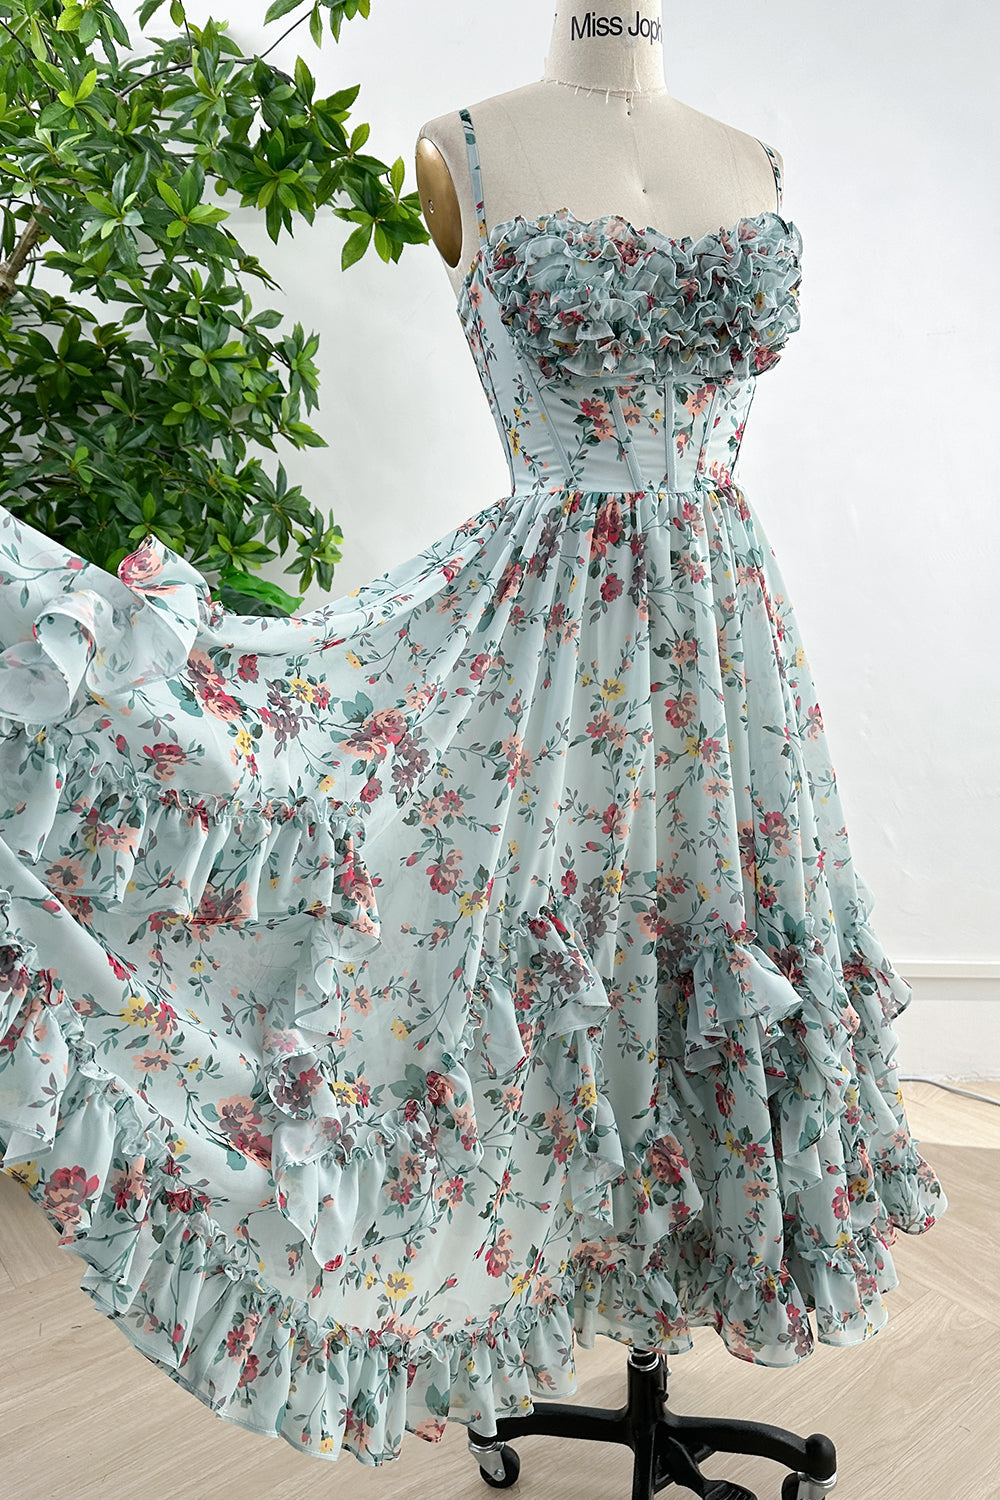 MissJophiel Spaghetti Straps Corset Floral Print Chiffon Dress